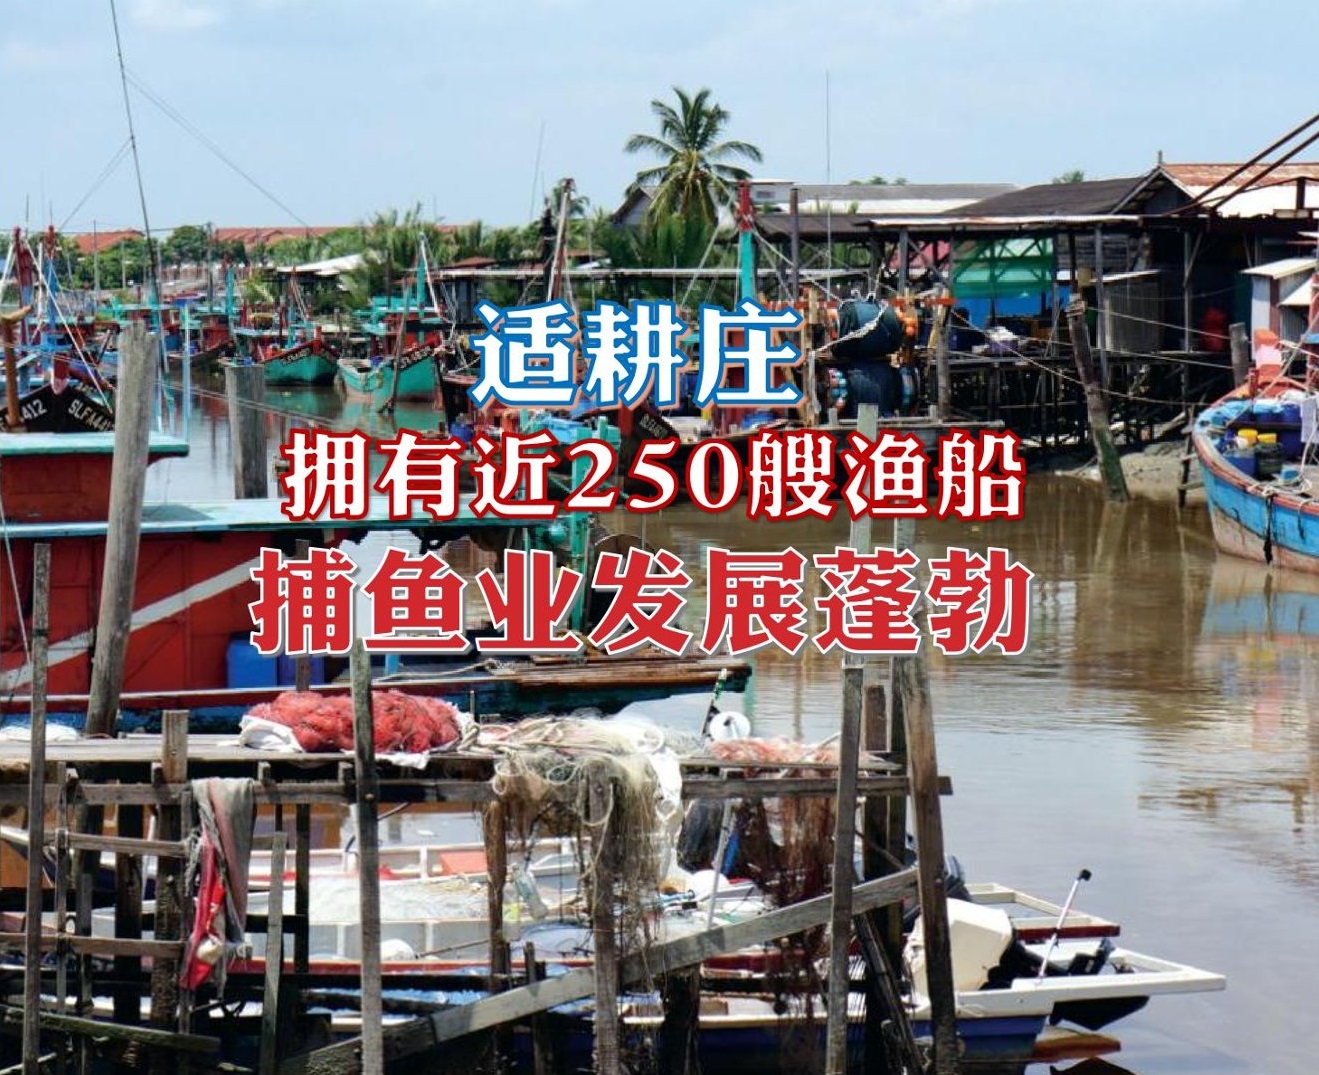 拥有近250艘渔船 适耕庄捕鱼业发展蓬勃 - 农牧世界